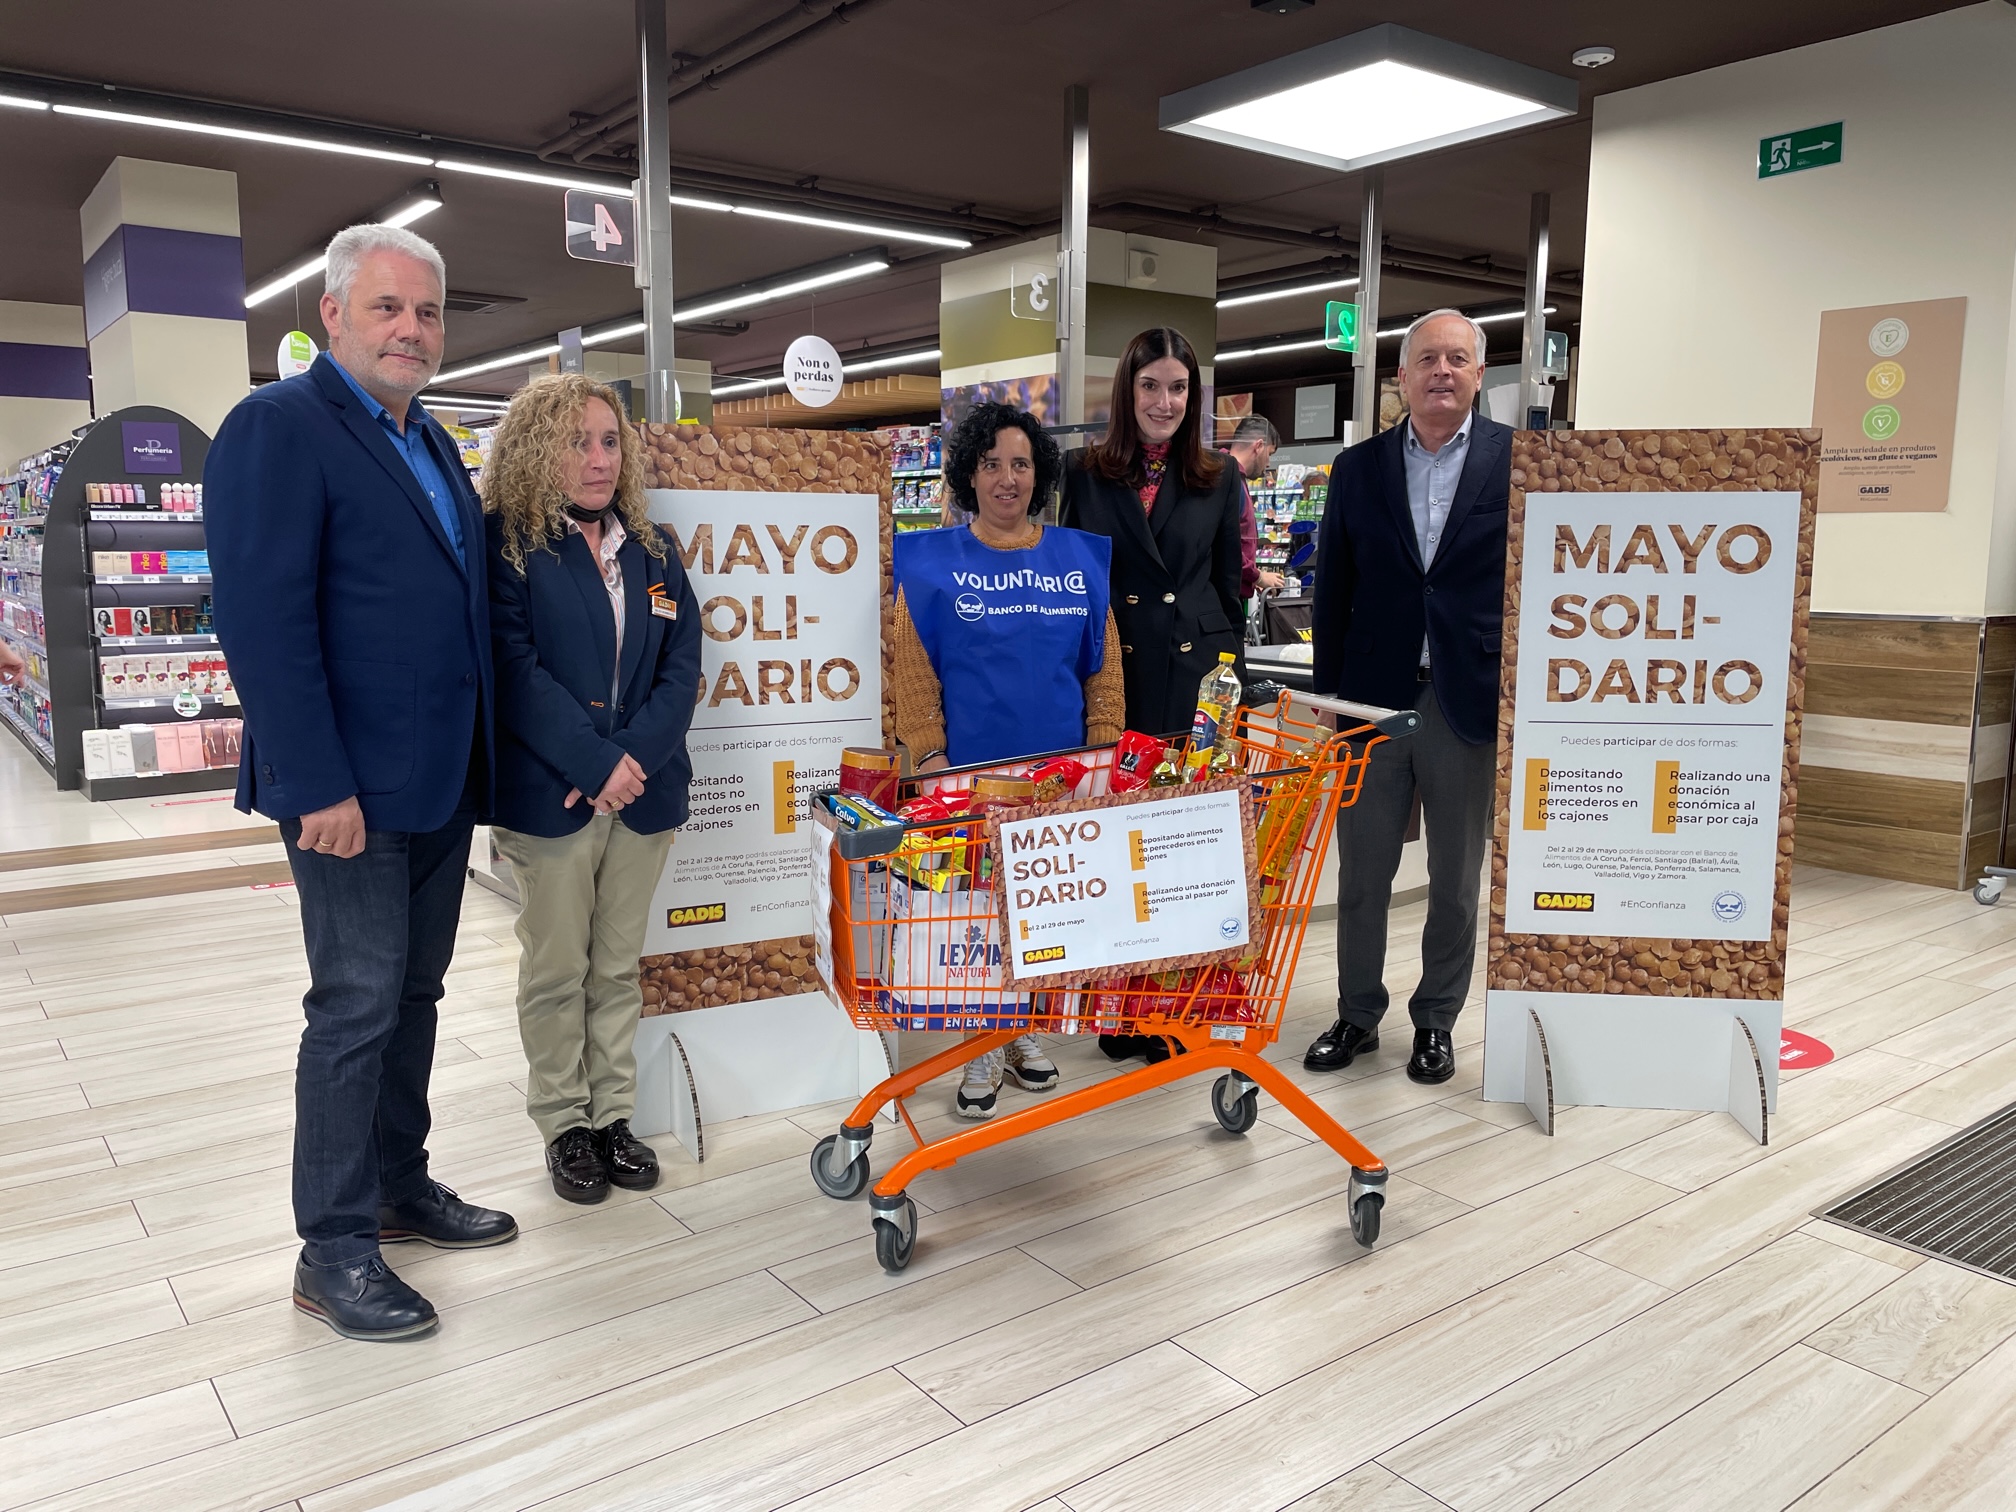 Llega una nueva edición de nuestro Mayo Solidario, la campaña de recogida de alimentos de nuestros supermercados